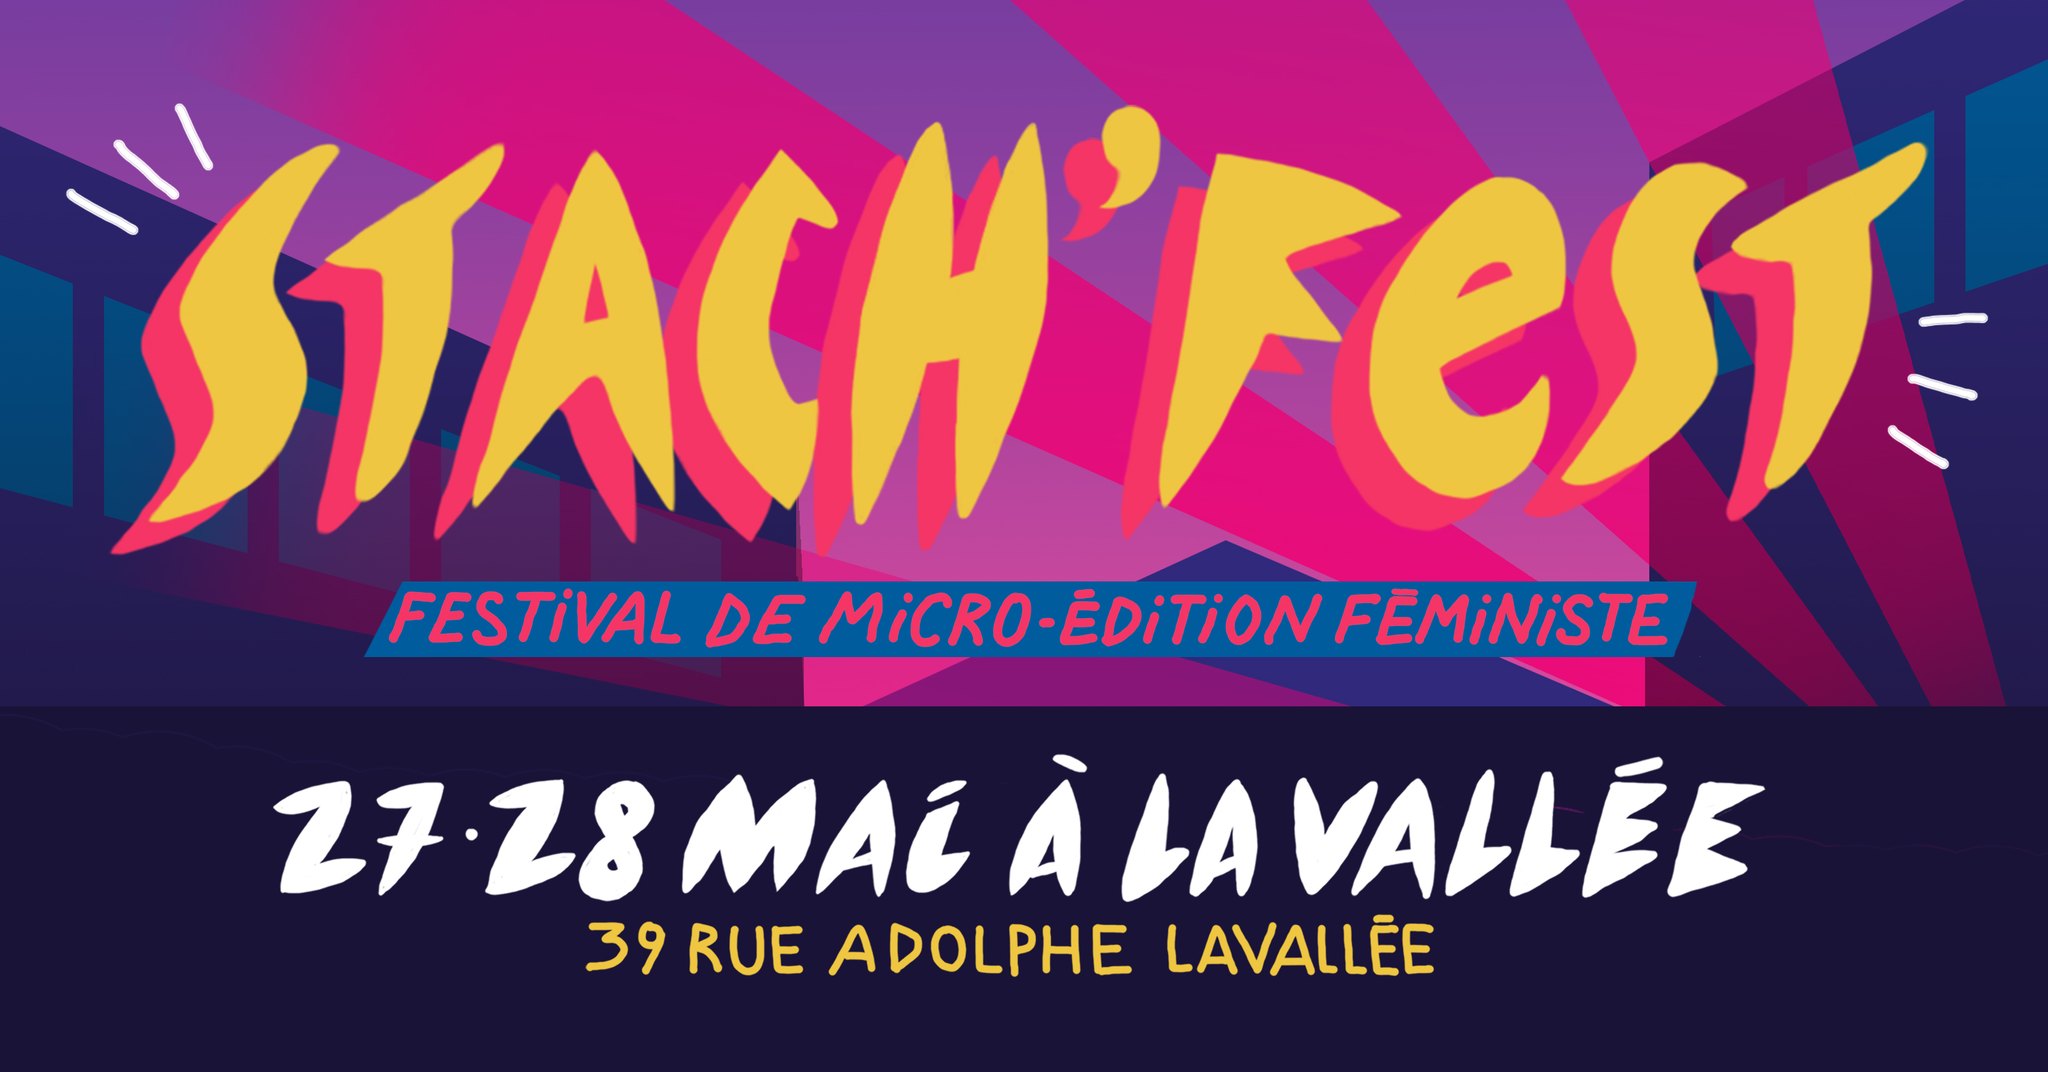 Stach'fest | Festival de micro-édition féministe